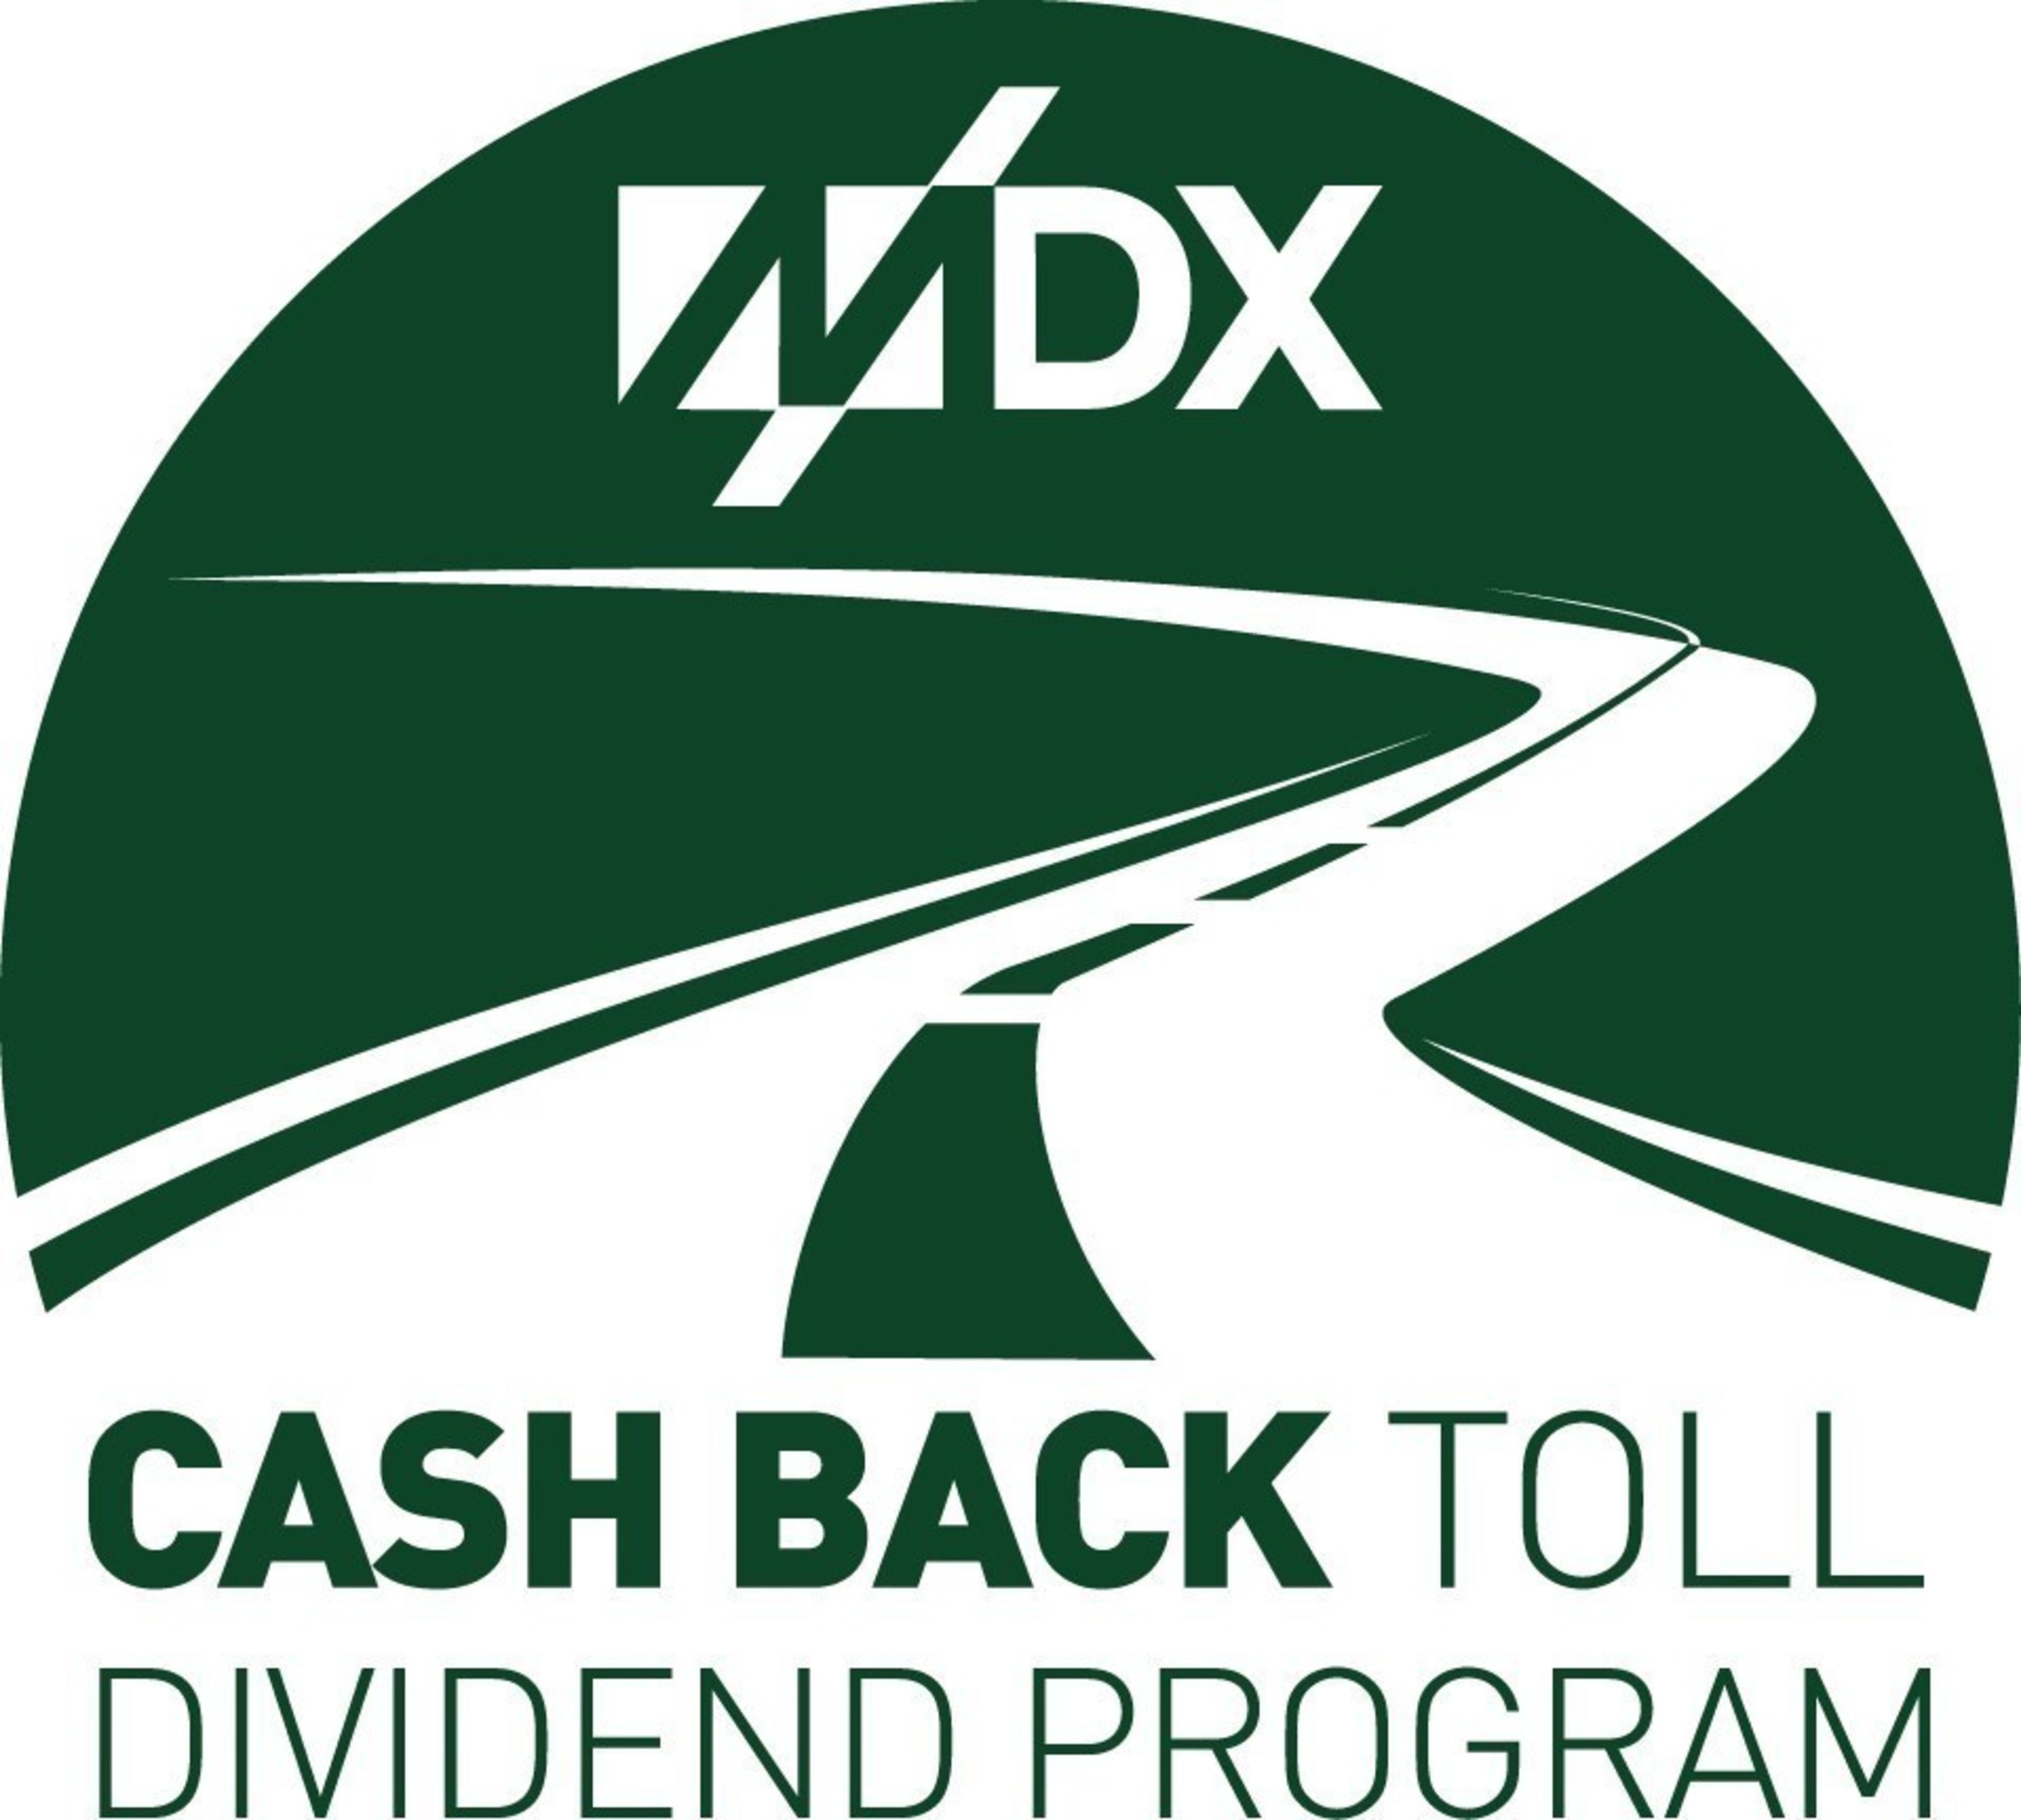 open-enrollment-for-mdx-cash-back-toll-dividend-program-set-to-begin